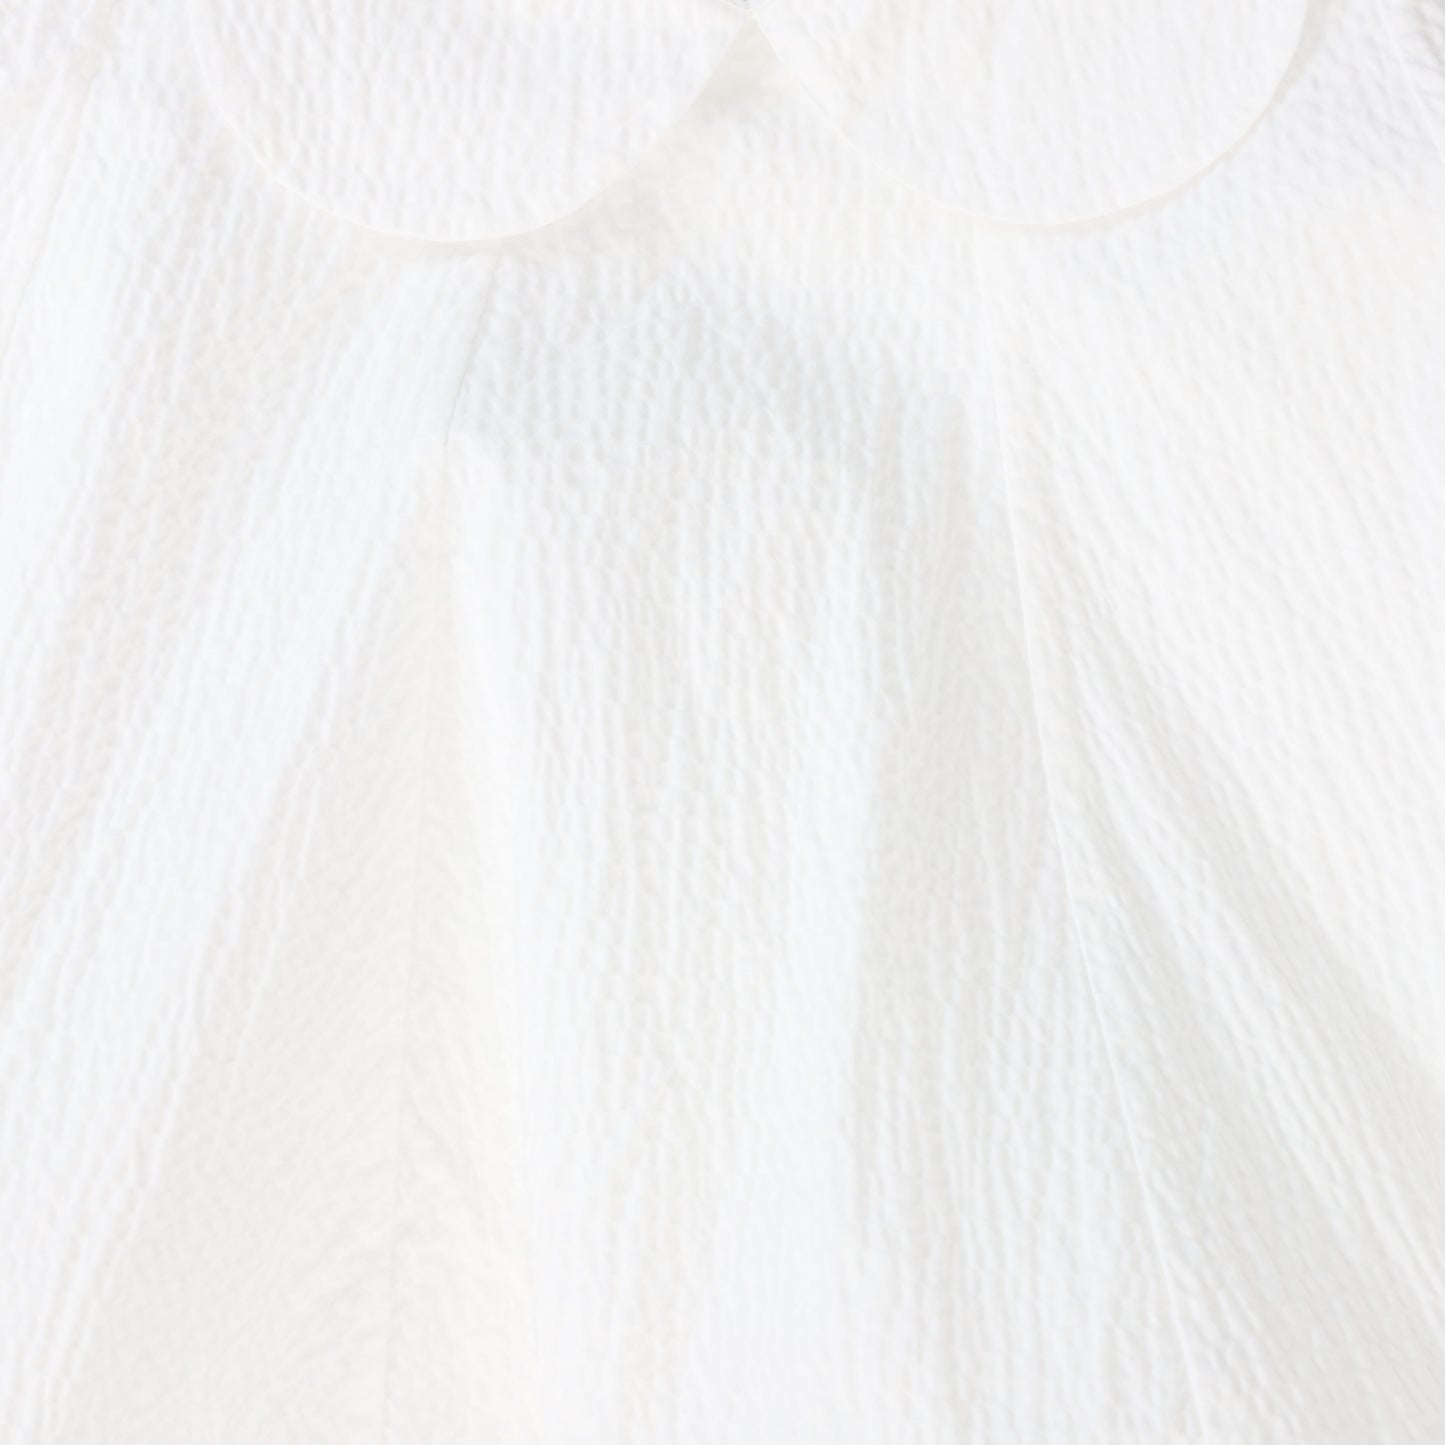 JNBY WHITE RUFFLE COLLAR DRESS